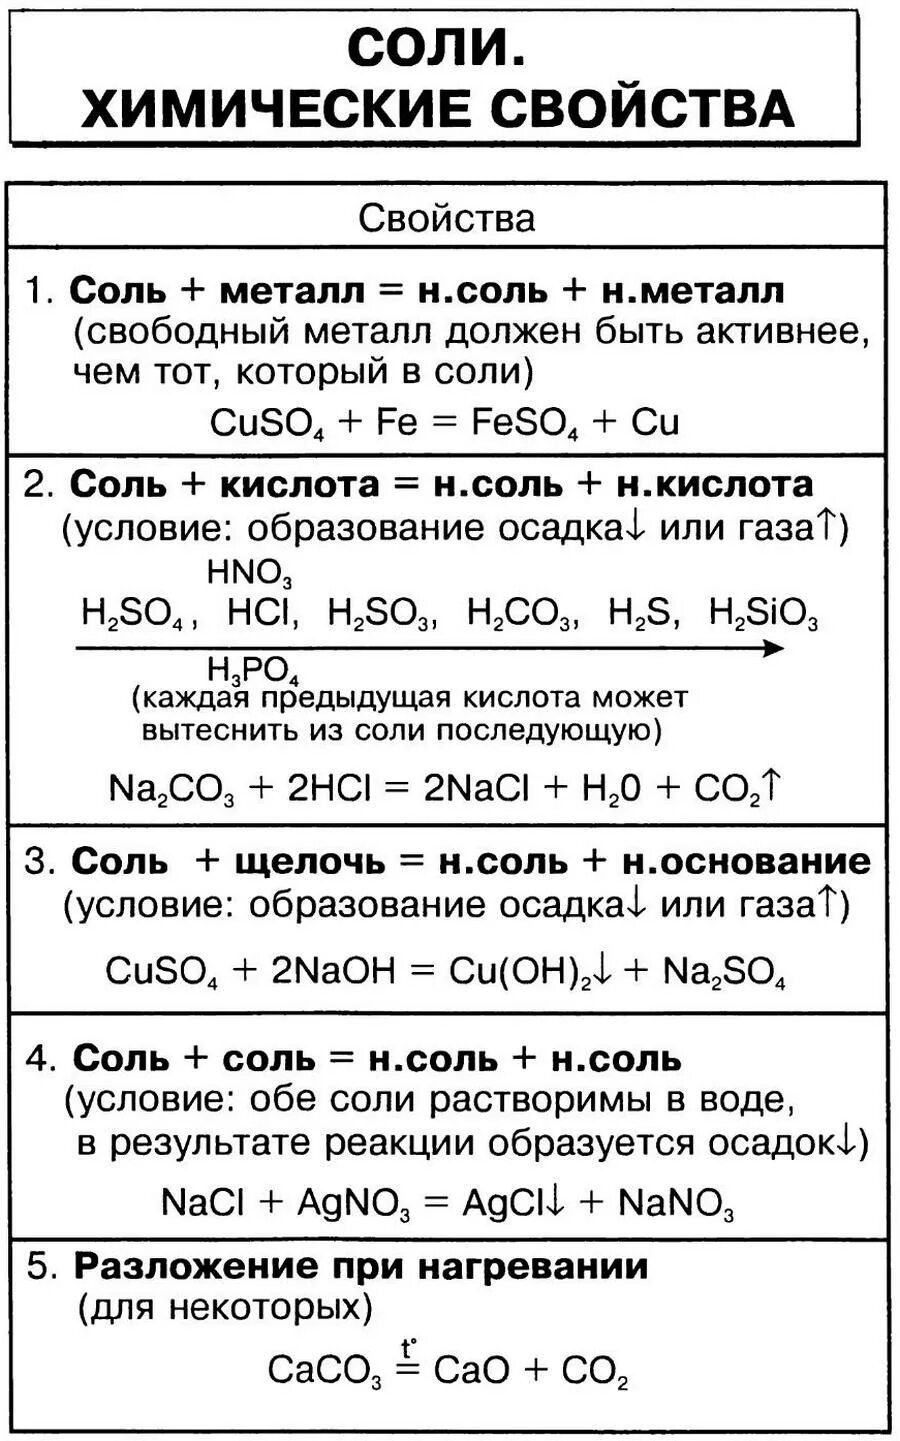 Химические свойства солей 8 класс химия таблица. Свойства солей химия 8 класс. Соли химические свойства 8 класс таблица. Химические свойства солей 8 класс. Хим реакции солей